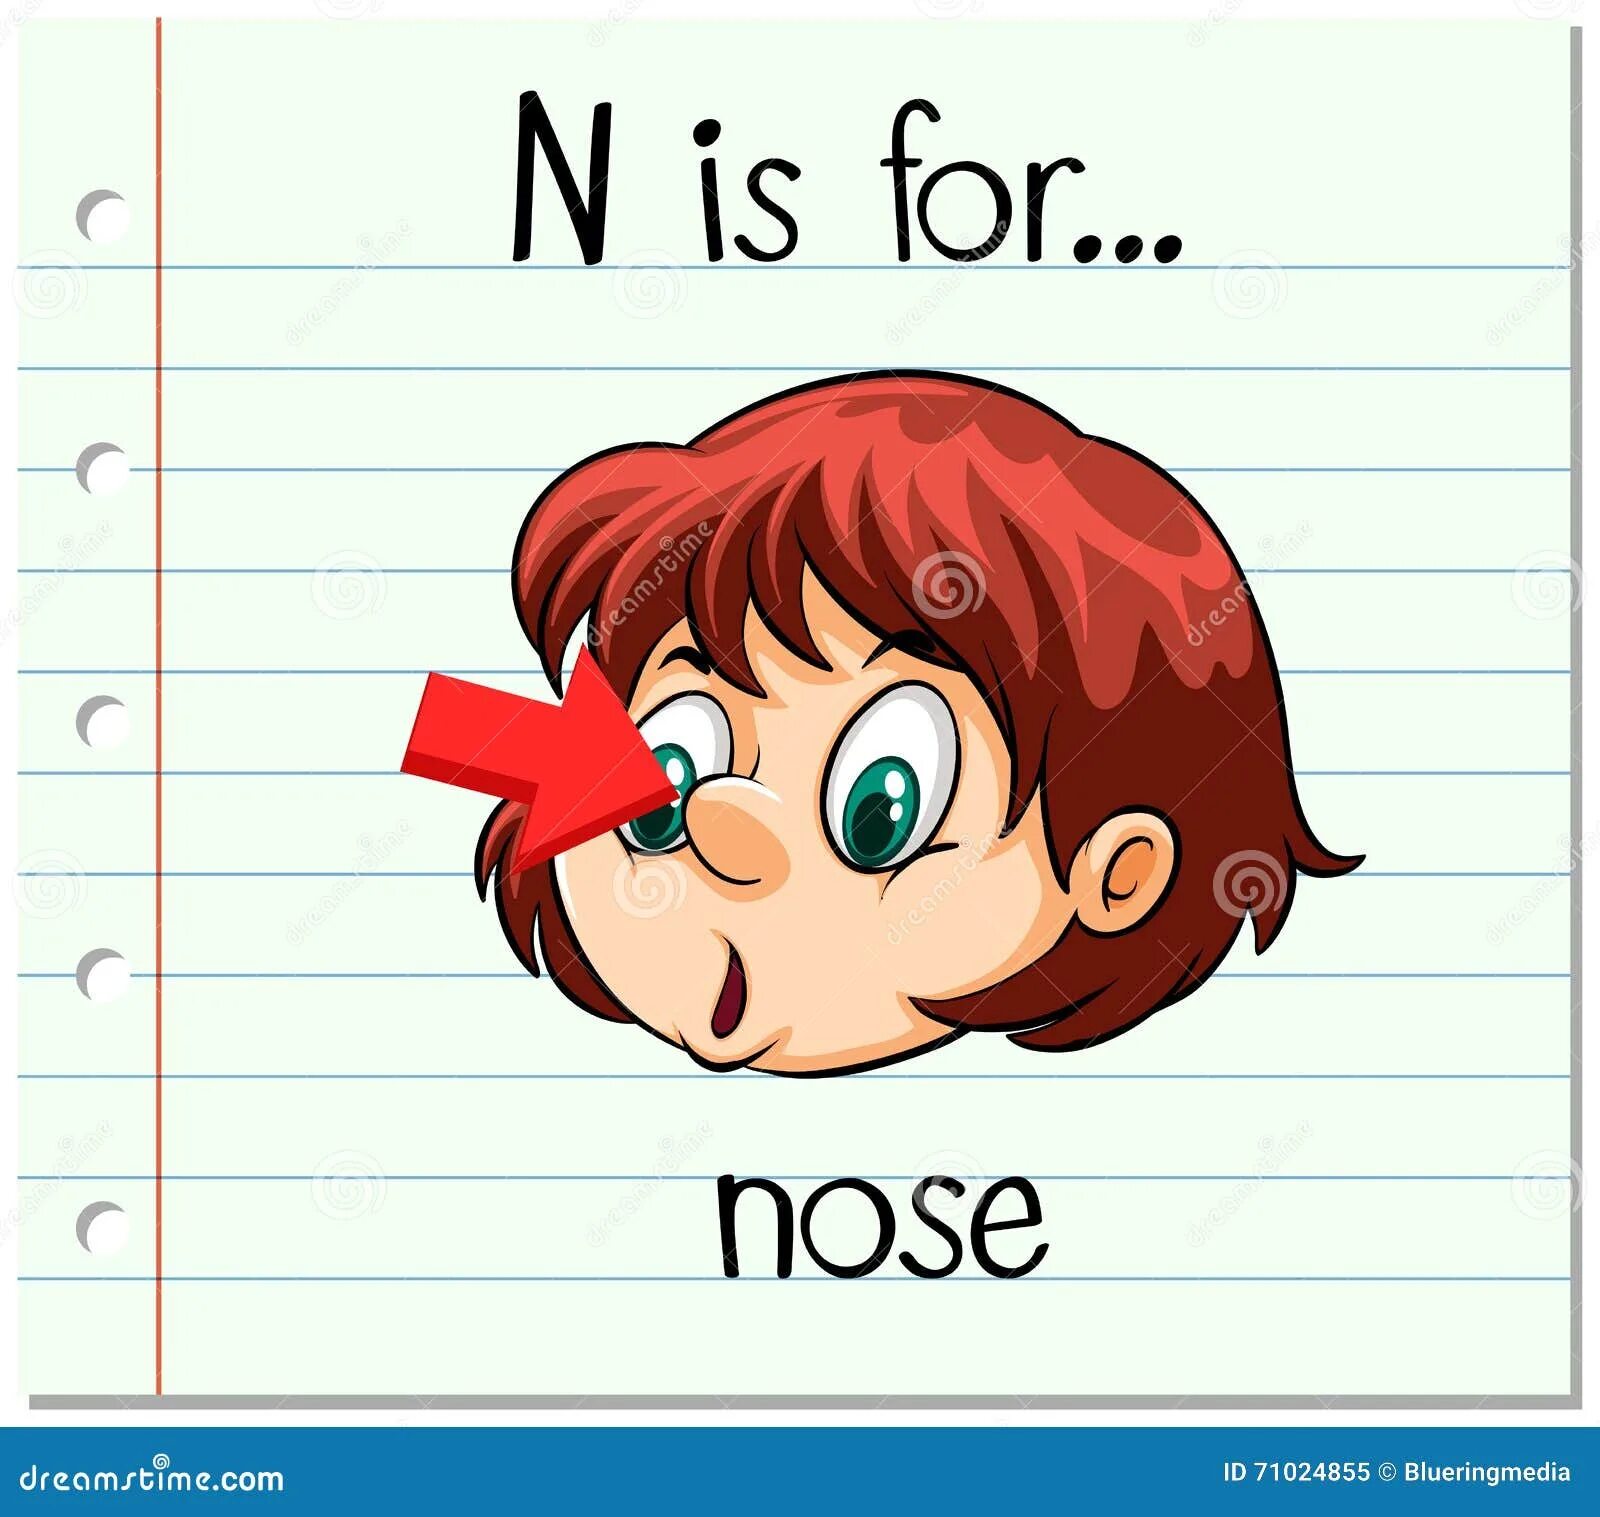 Нос перевести на английский. Нос на английском картинка. N is for nose. Нос на английском для детей. Буква nose с картинкой.